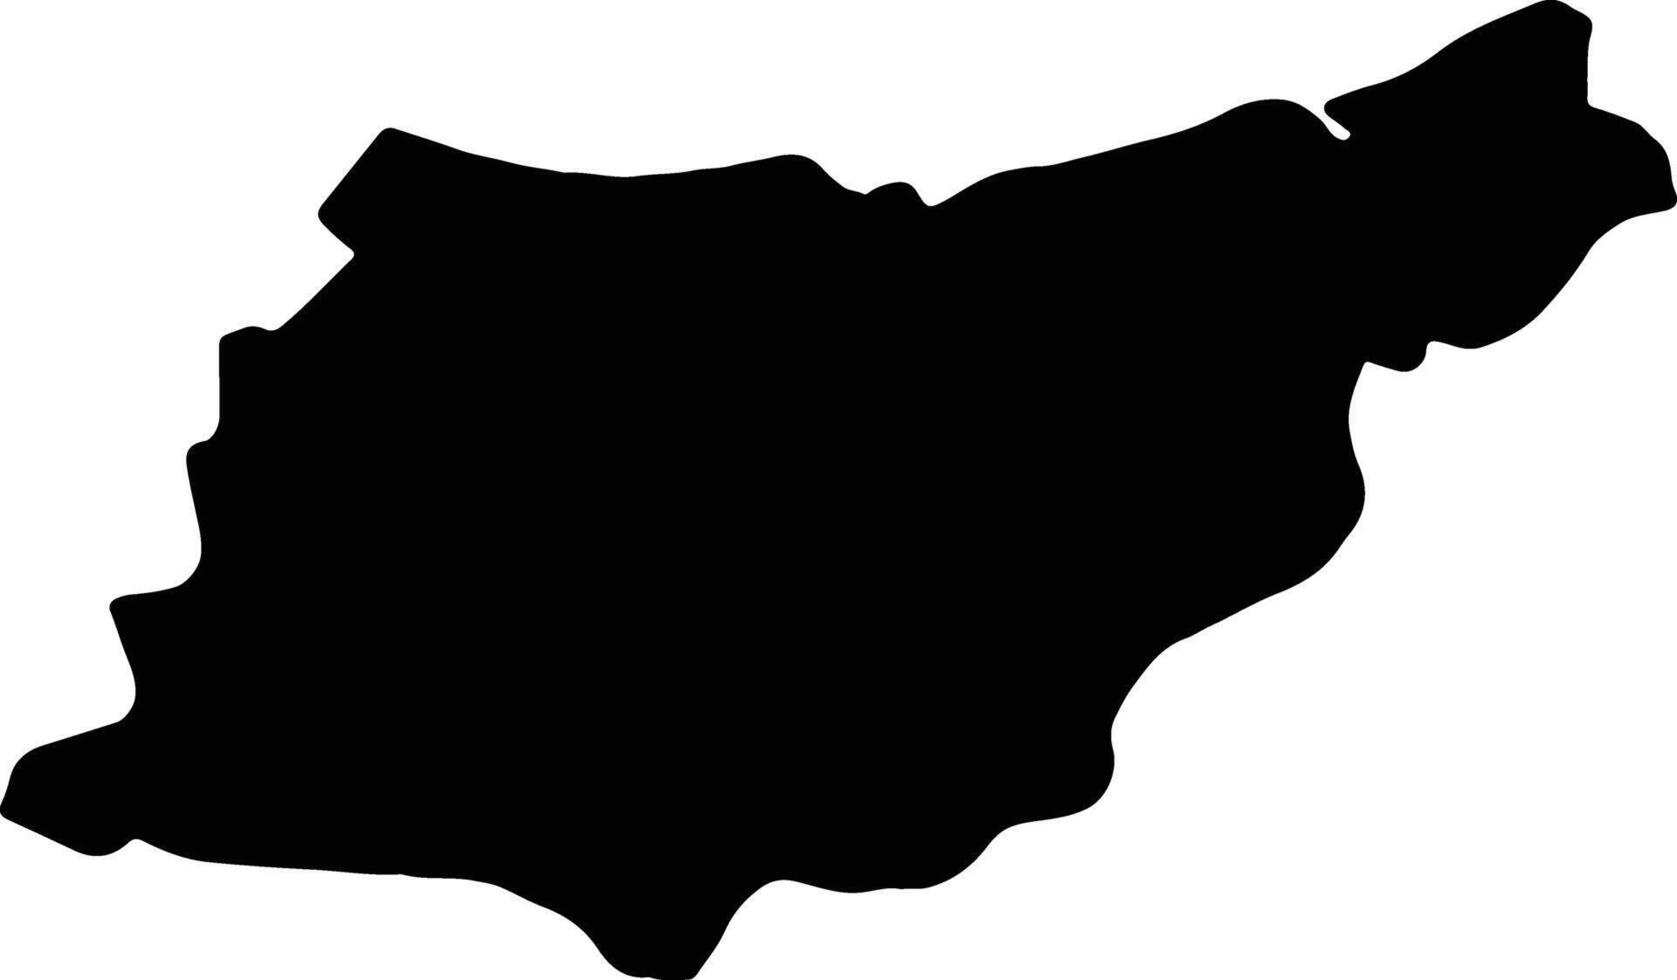 Gipuzkoa Spain silhouette map vector